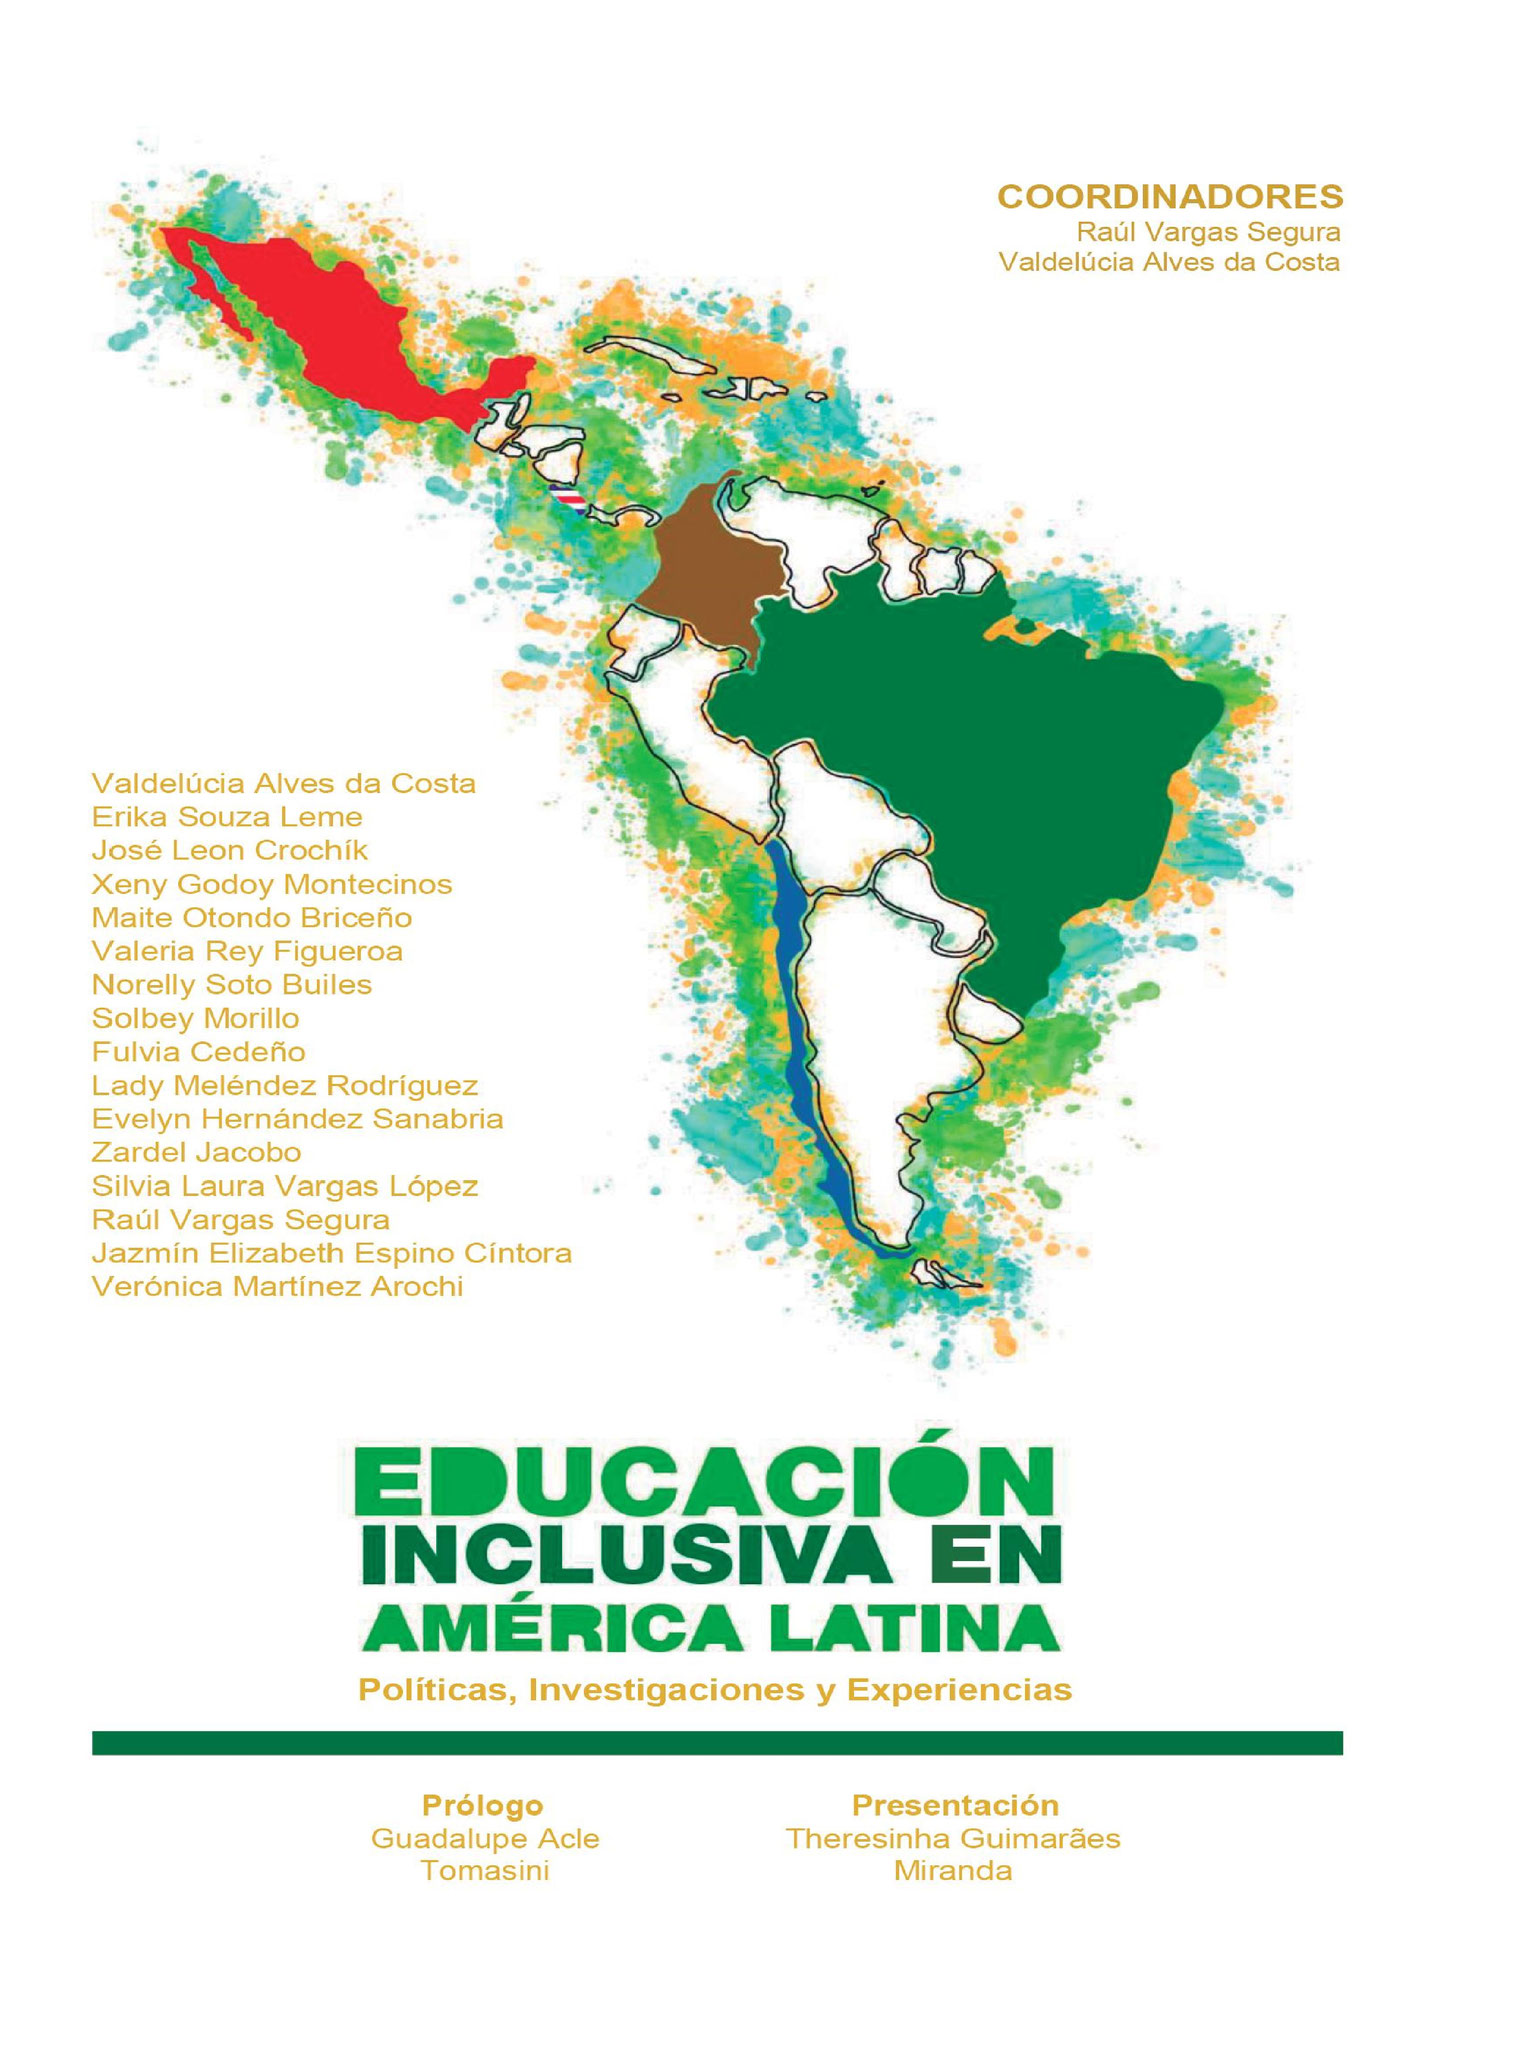 Educación Inclusiva en América Latina, Políticas, Investigaciones y Experiencias.